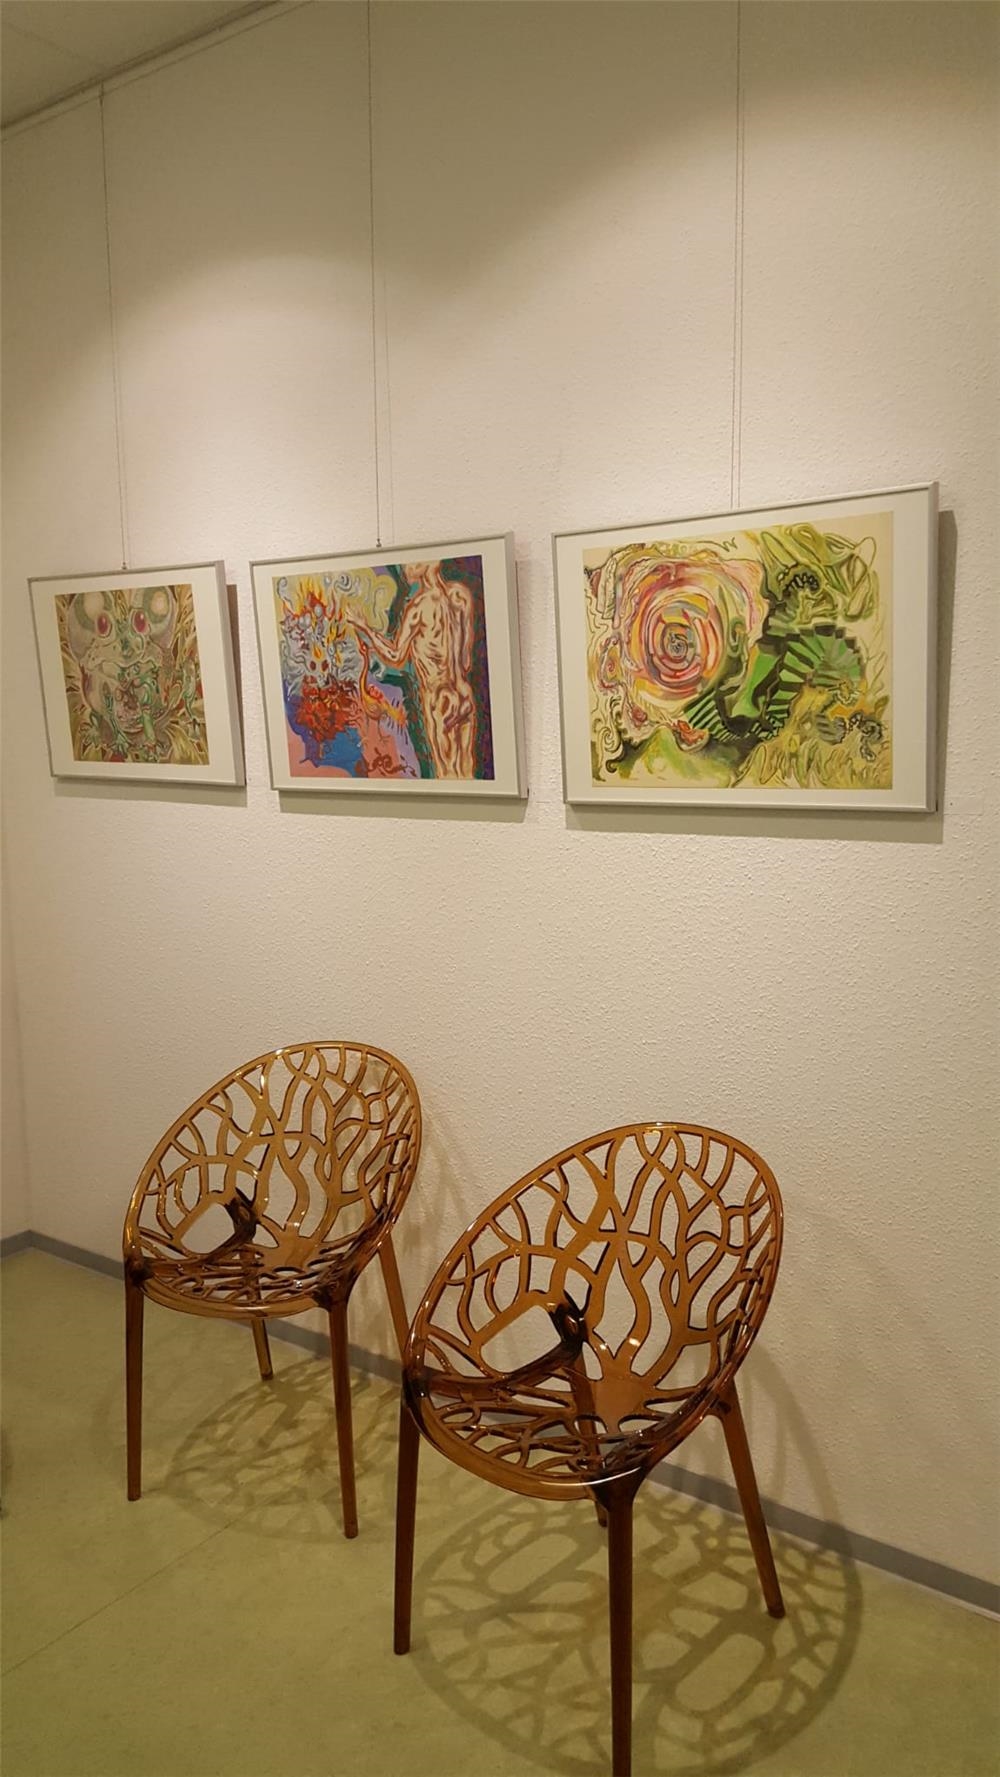 drei bilder der Ausstellung hängen an einer Wand, davor stehen zwei Stühle (© Caritasverband Worms e. V.)